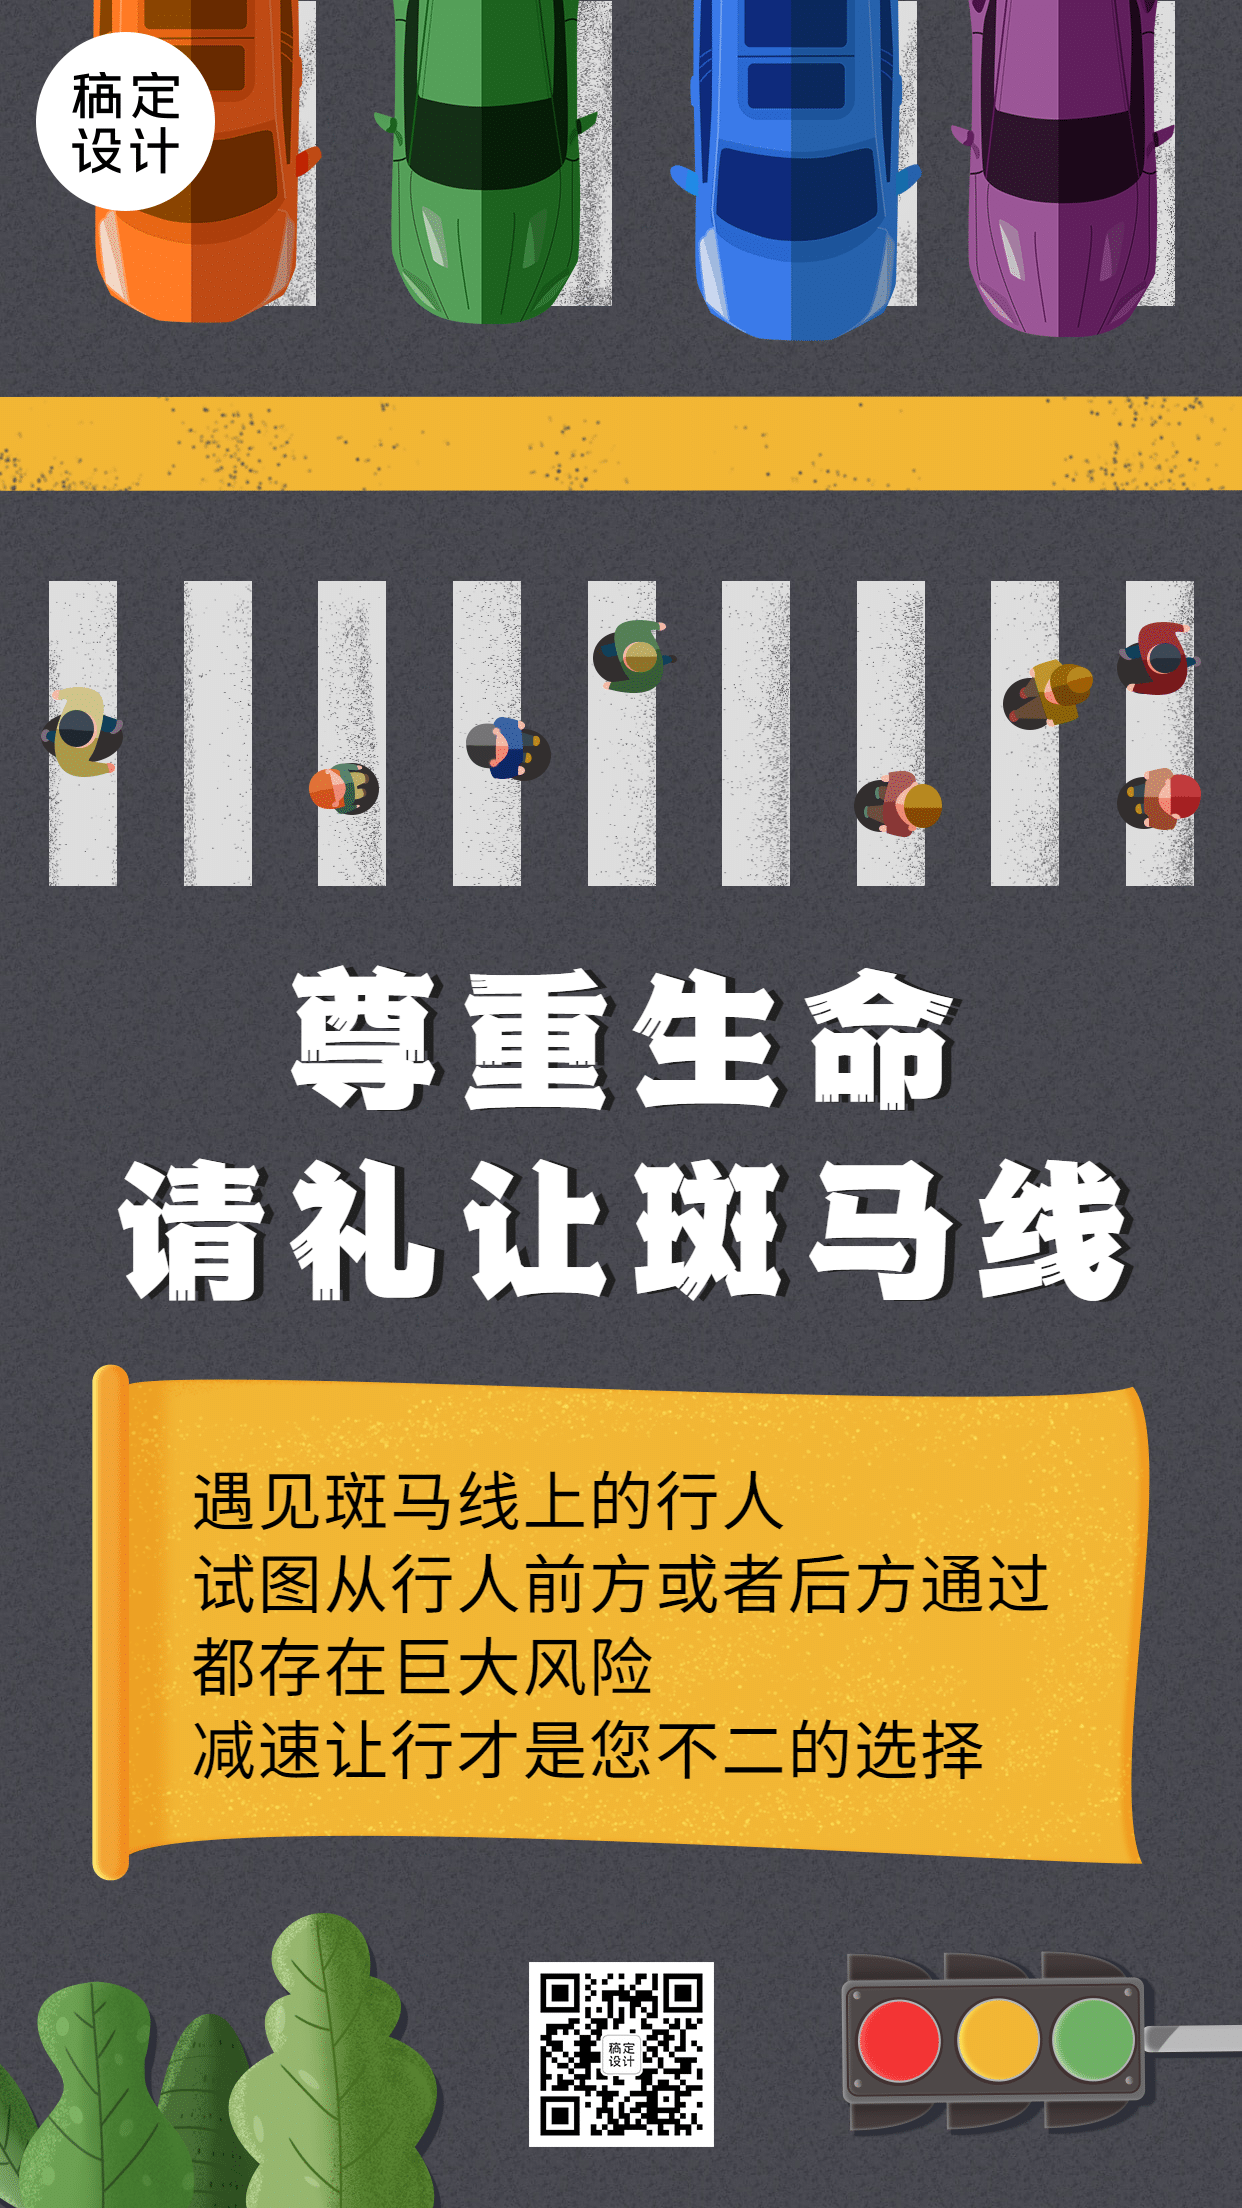 公安交通安全礼让斑马线公益宣传手机海报